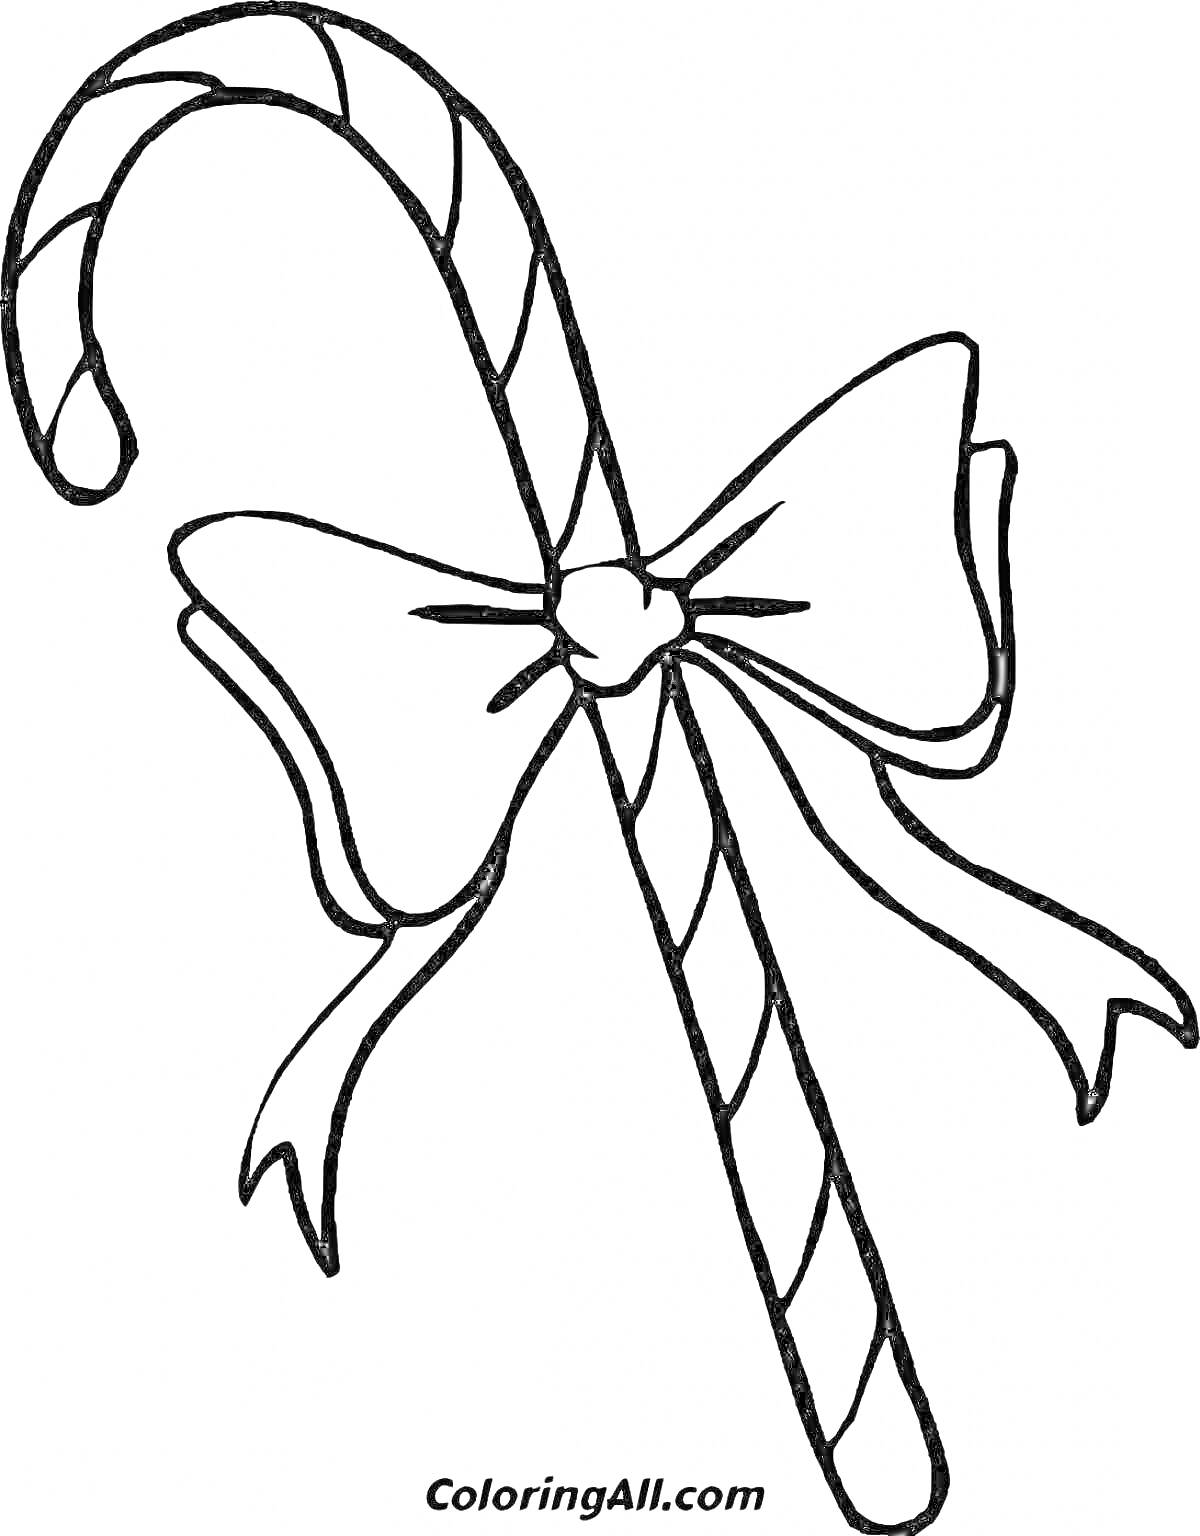 Раскраска Леденец в форме трости с бантиком